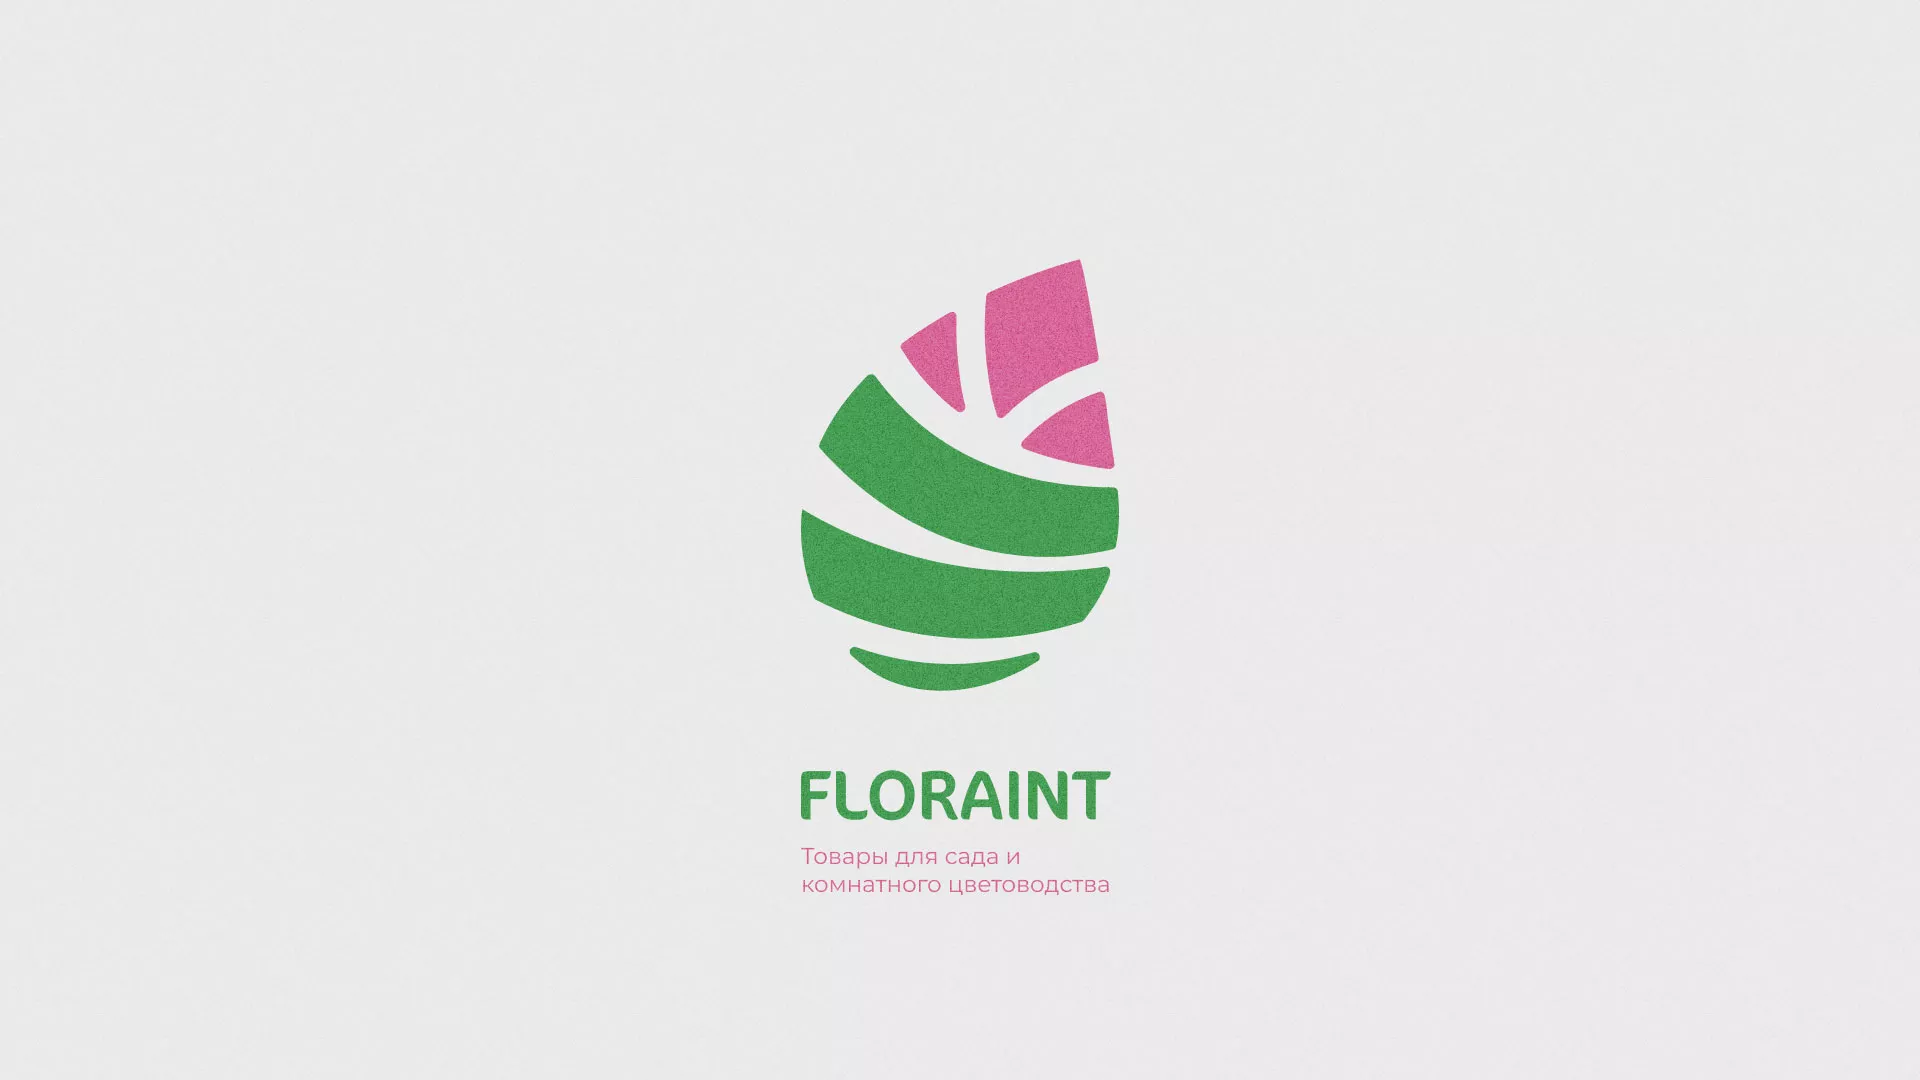 Разработка оформления профиля Instagram для магазина «Floraint» в Козьмодемьянске